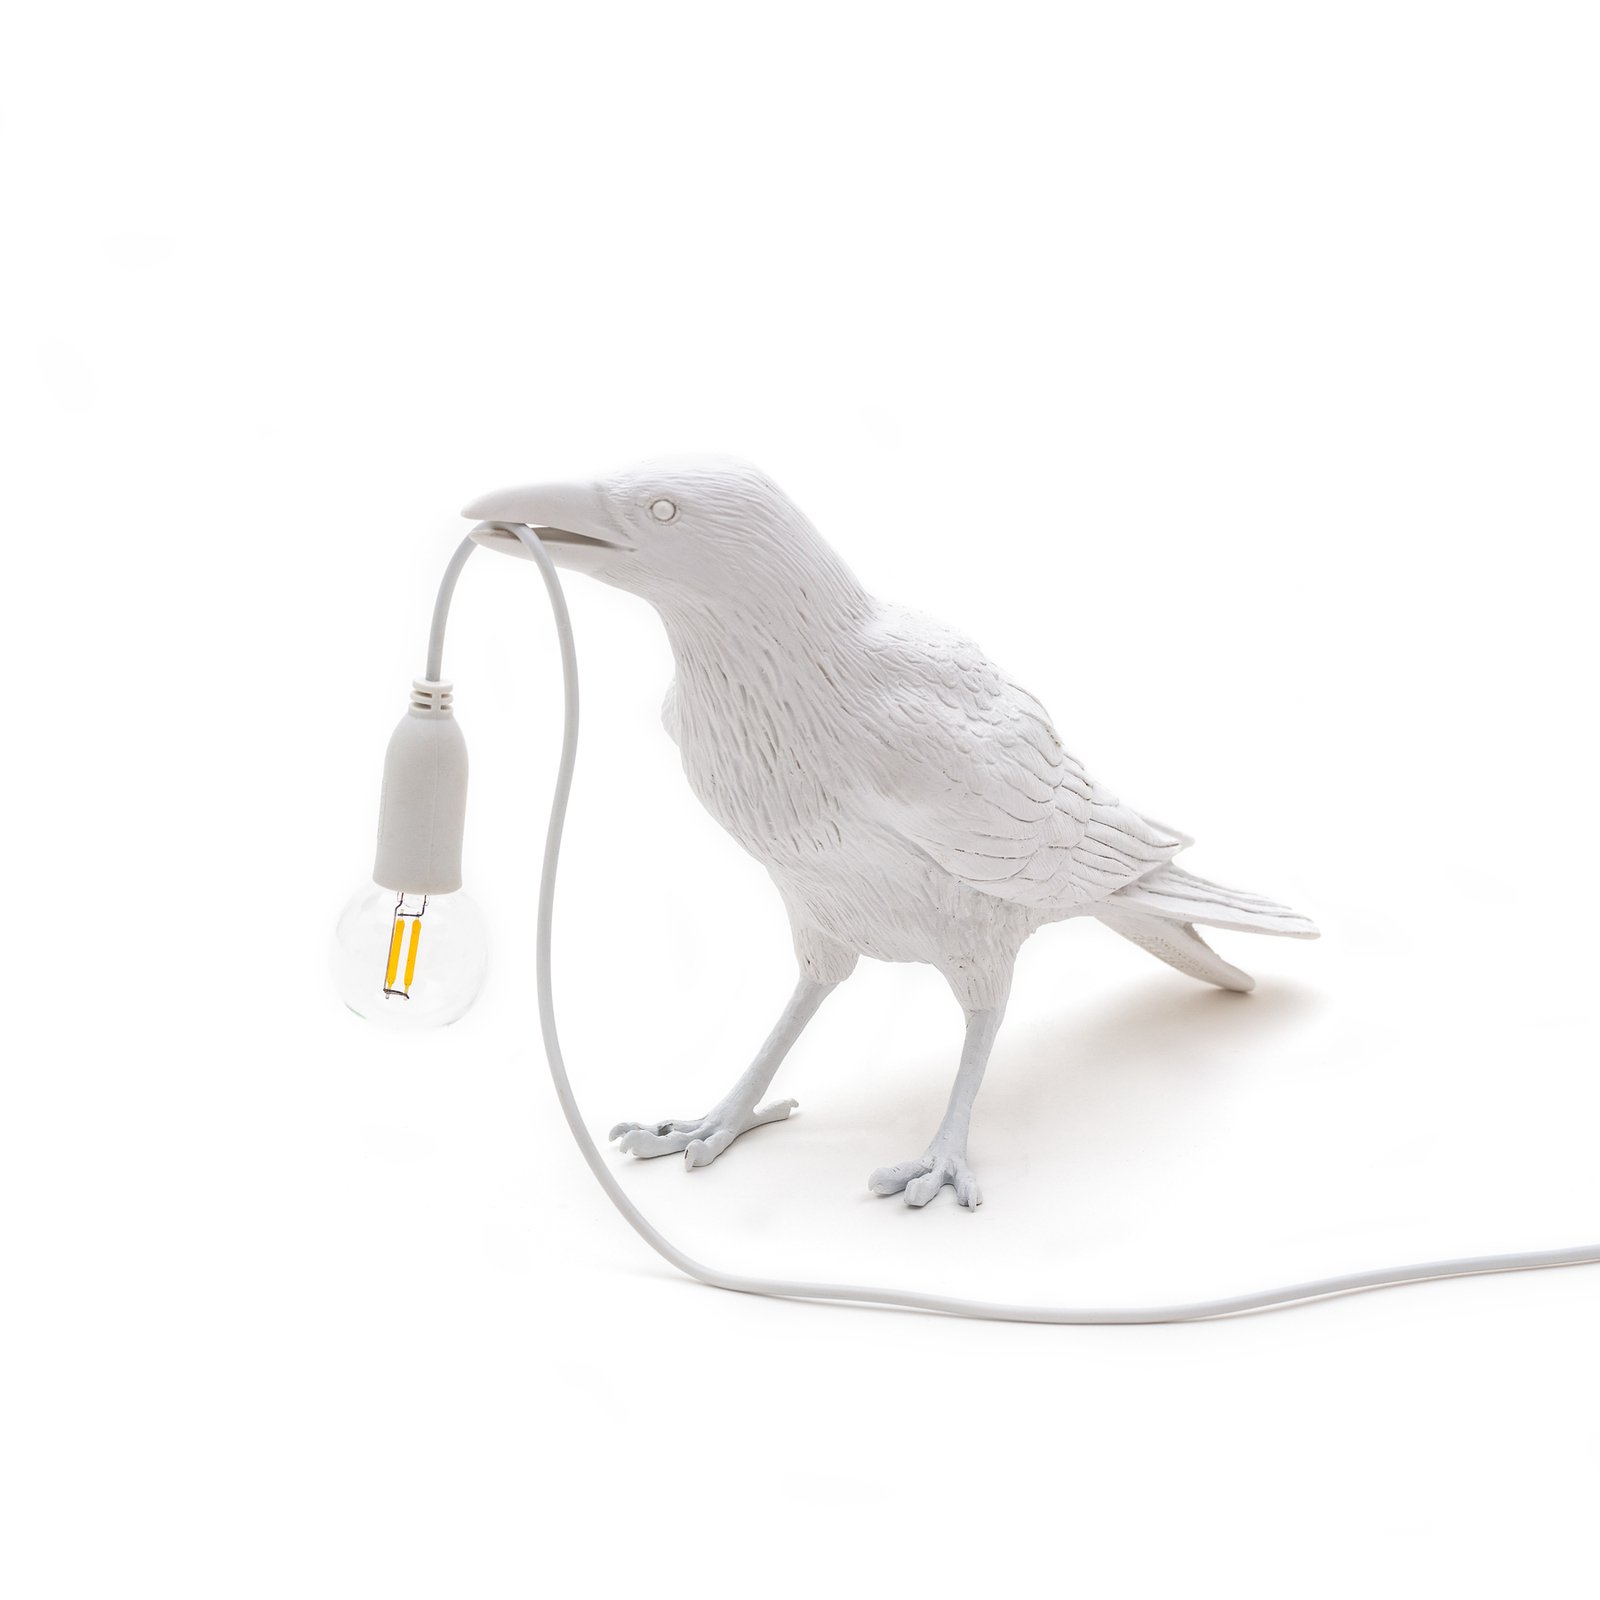 Bird Lamp deko LED-bordlampe, afventende, hvid